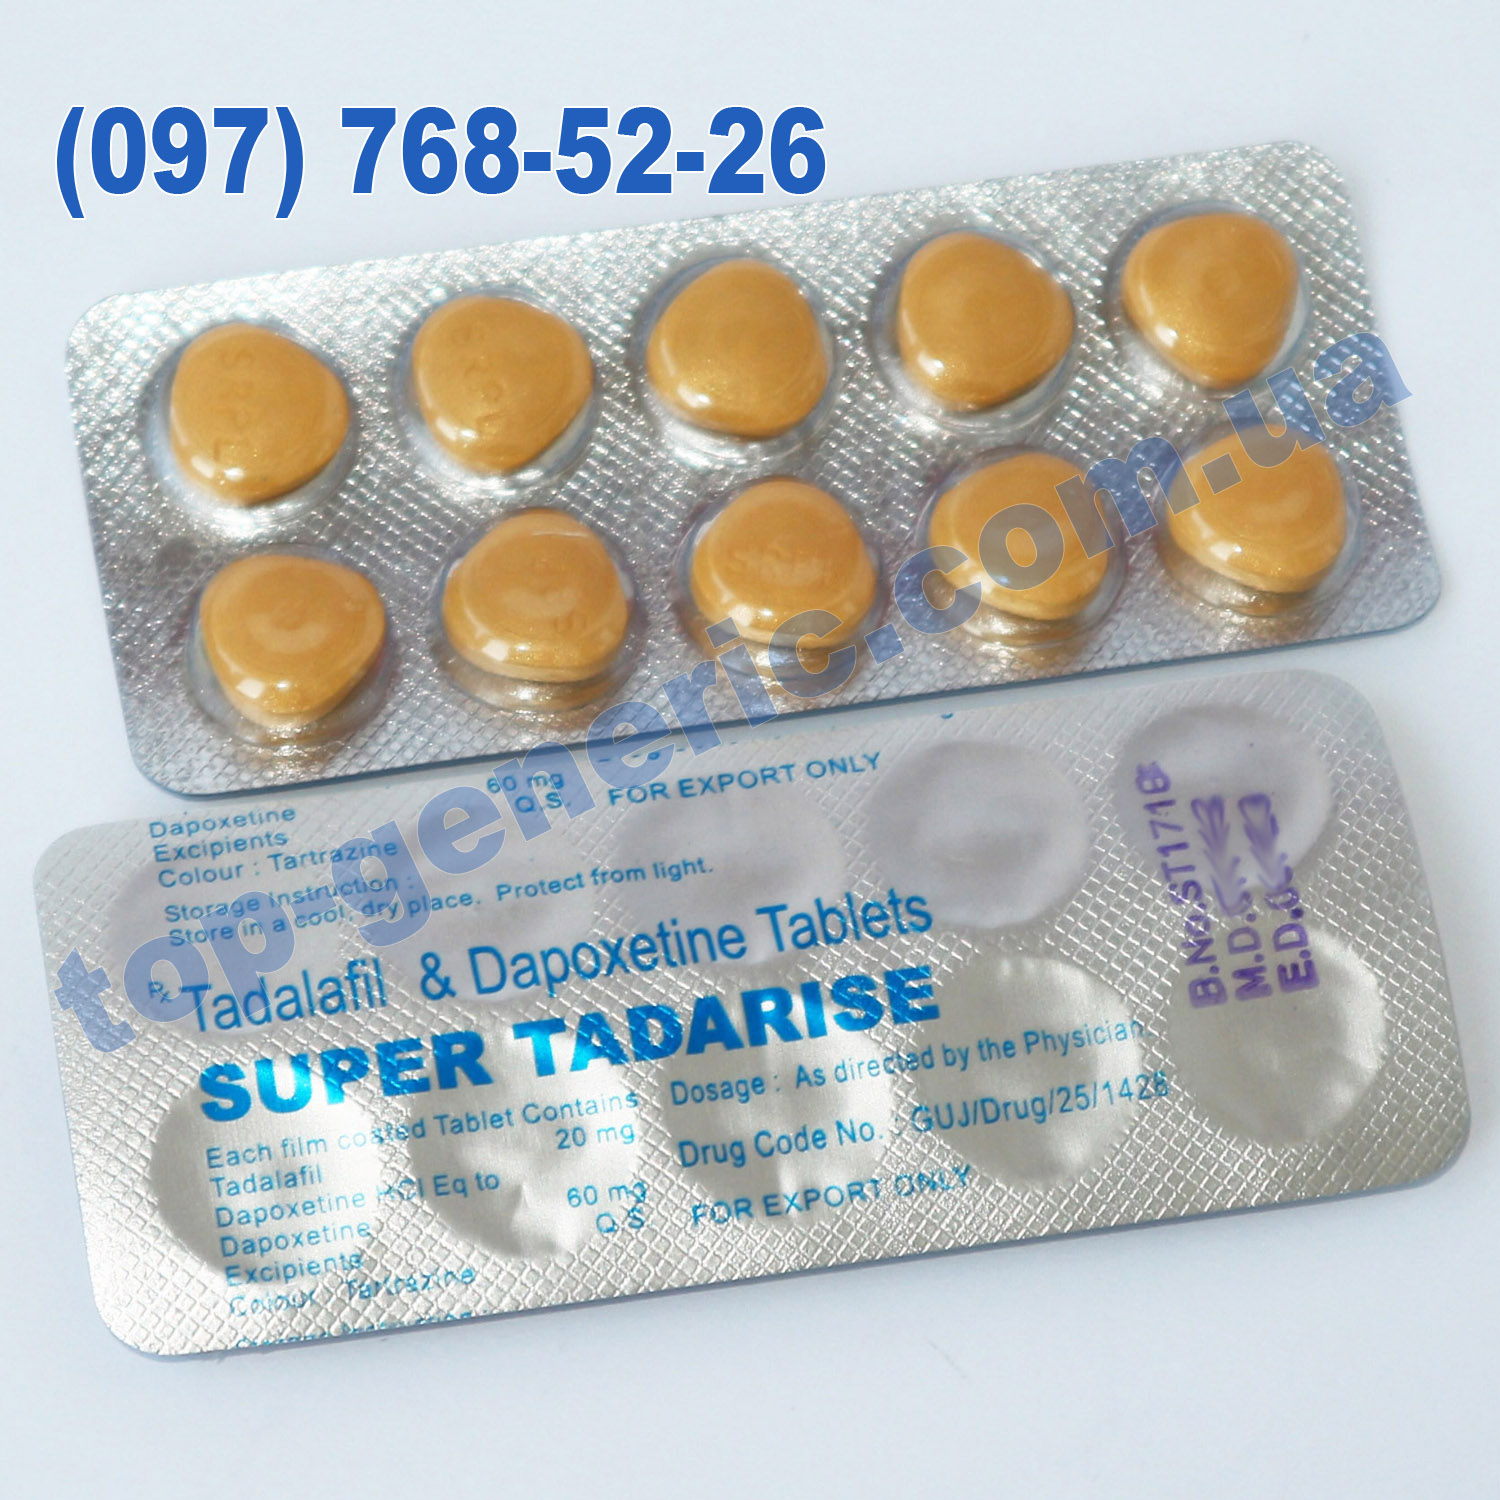 Таблетки для продолжения акта для мужчин. Super-Tadarise-20 (тадалафил+дапоксетин). Тадалафил дапоксетин. Таблетки для продления акта. Таблетки для долгого акта для мужчин.